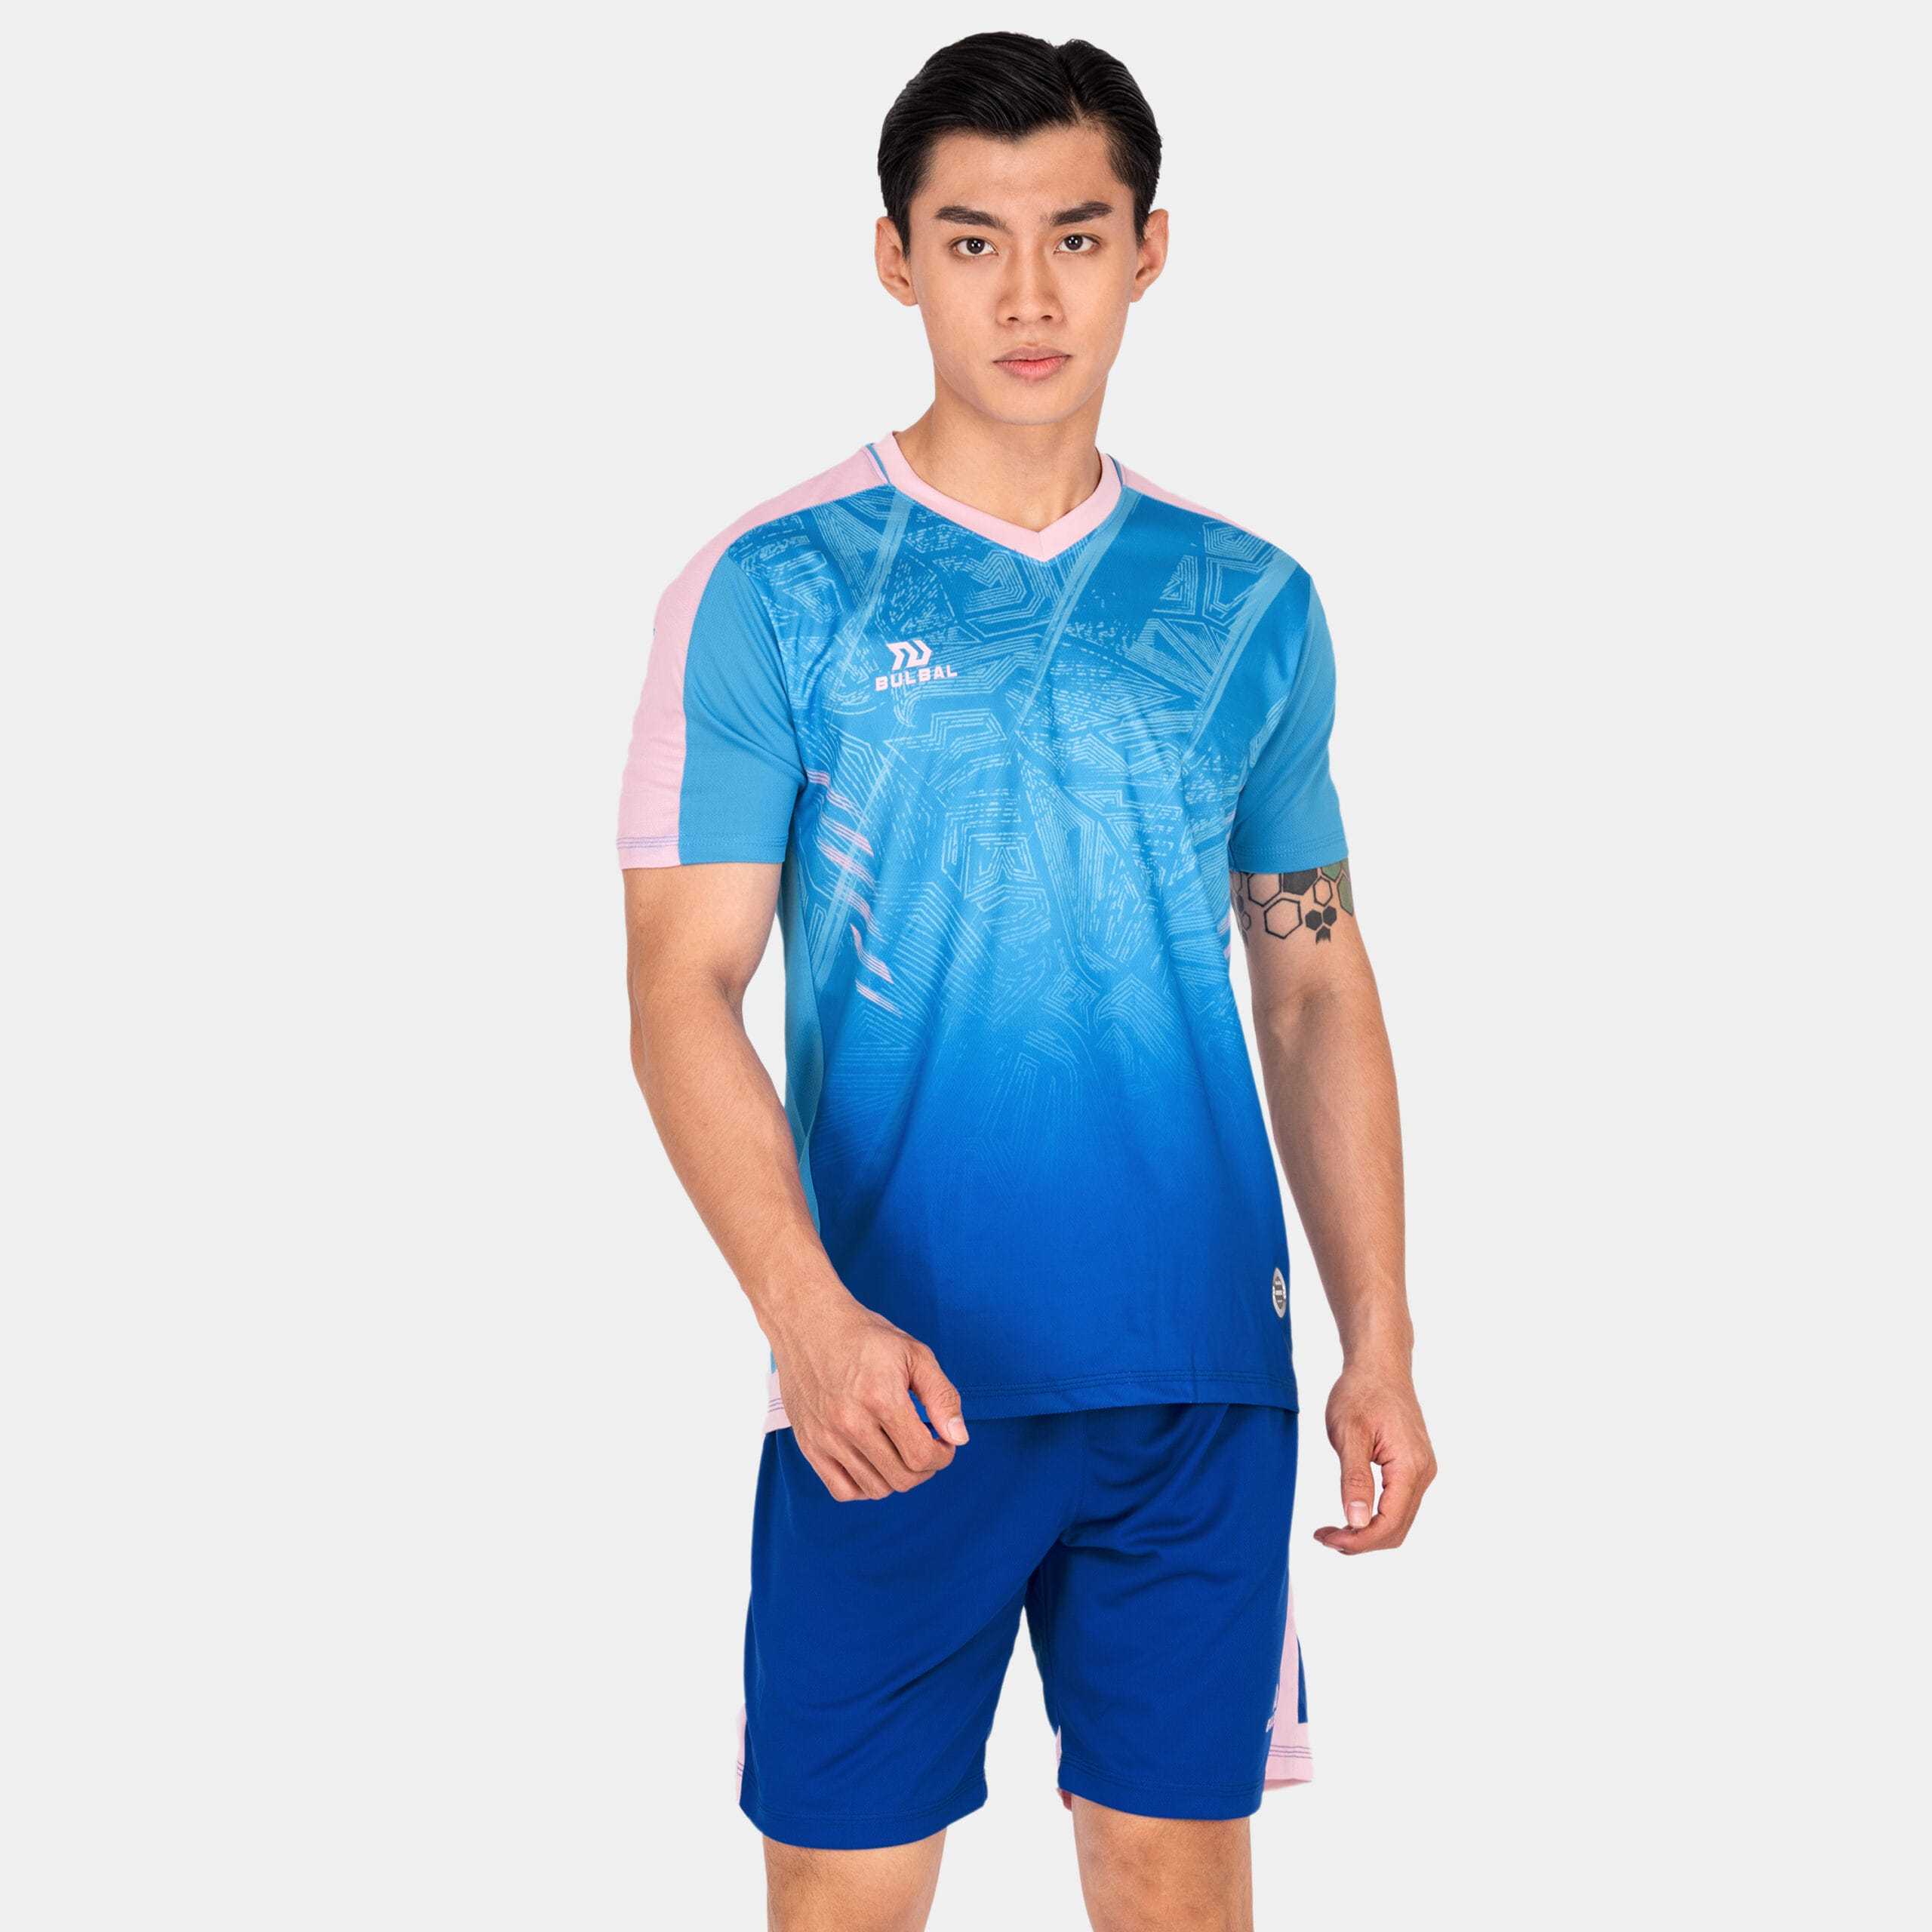 Bộ quần áo bóng đá phủi thiết kế chính hàng Bulbal Falcol 3 màu xanh biển 1